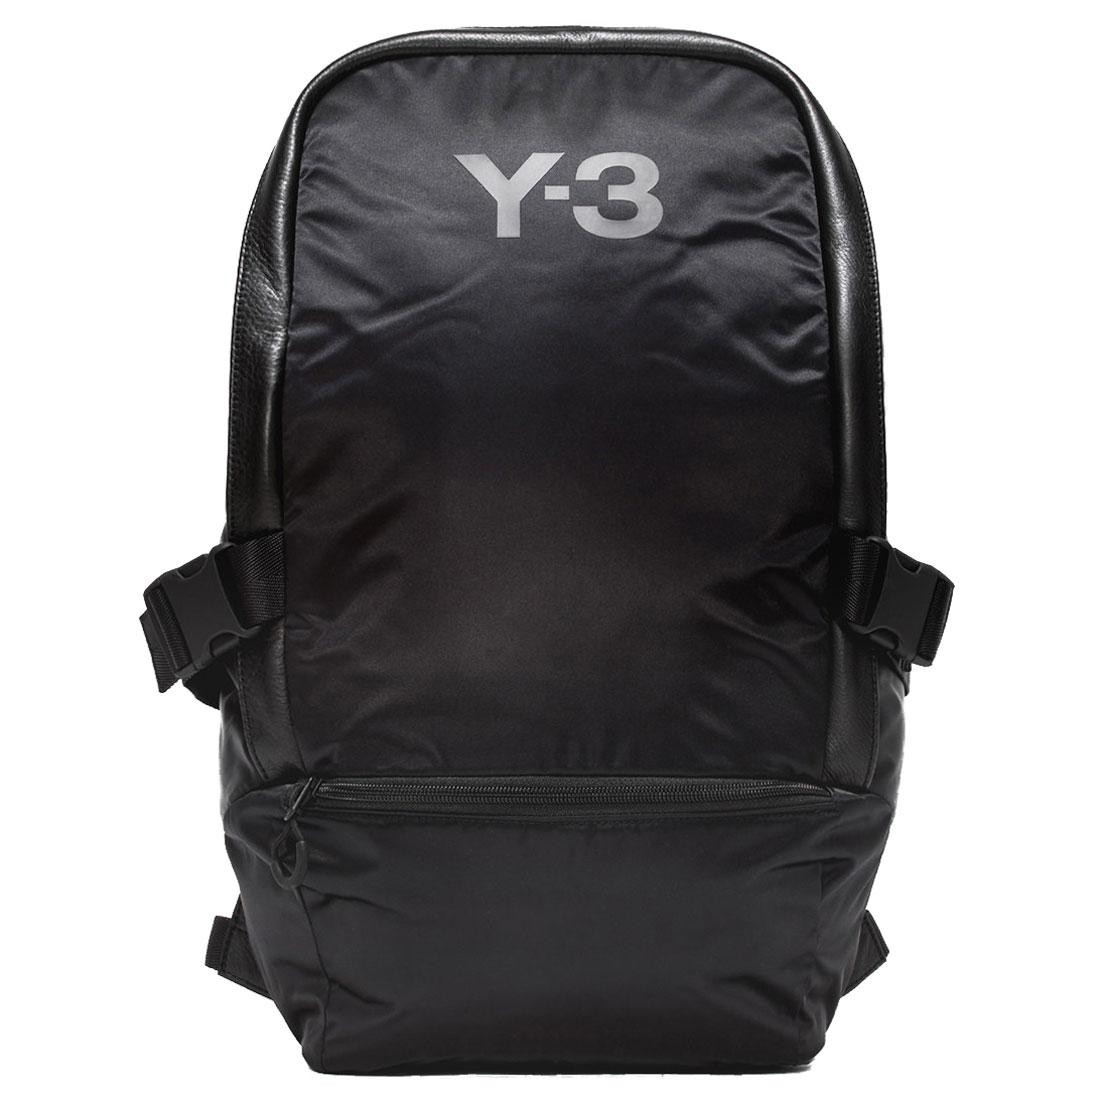 Adidas Y-3 Racer Backpack black